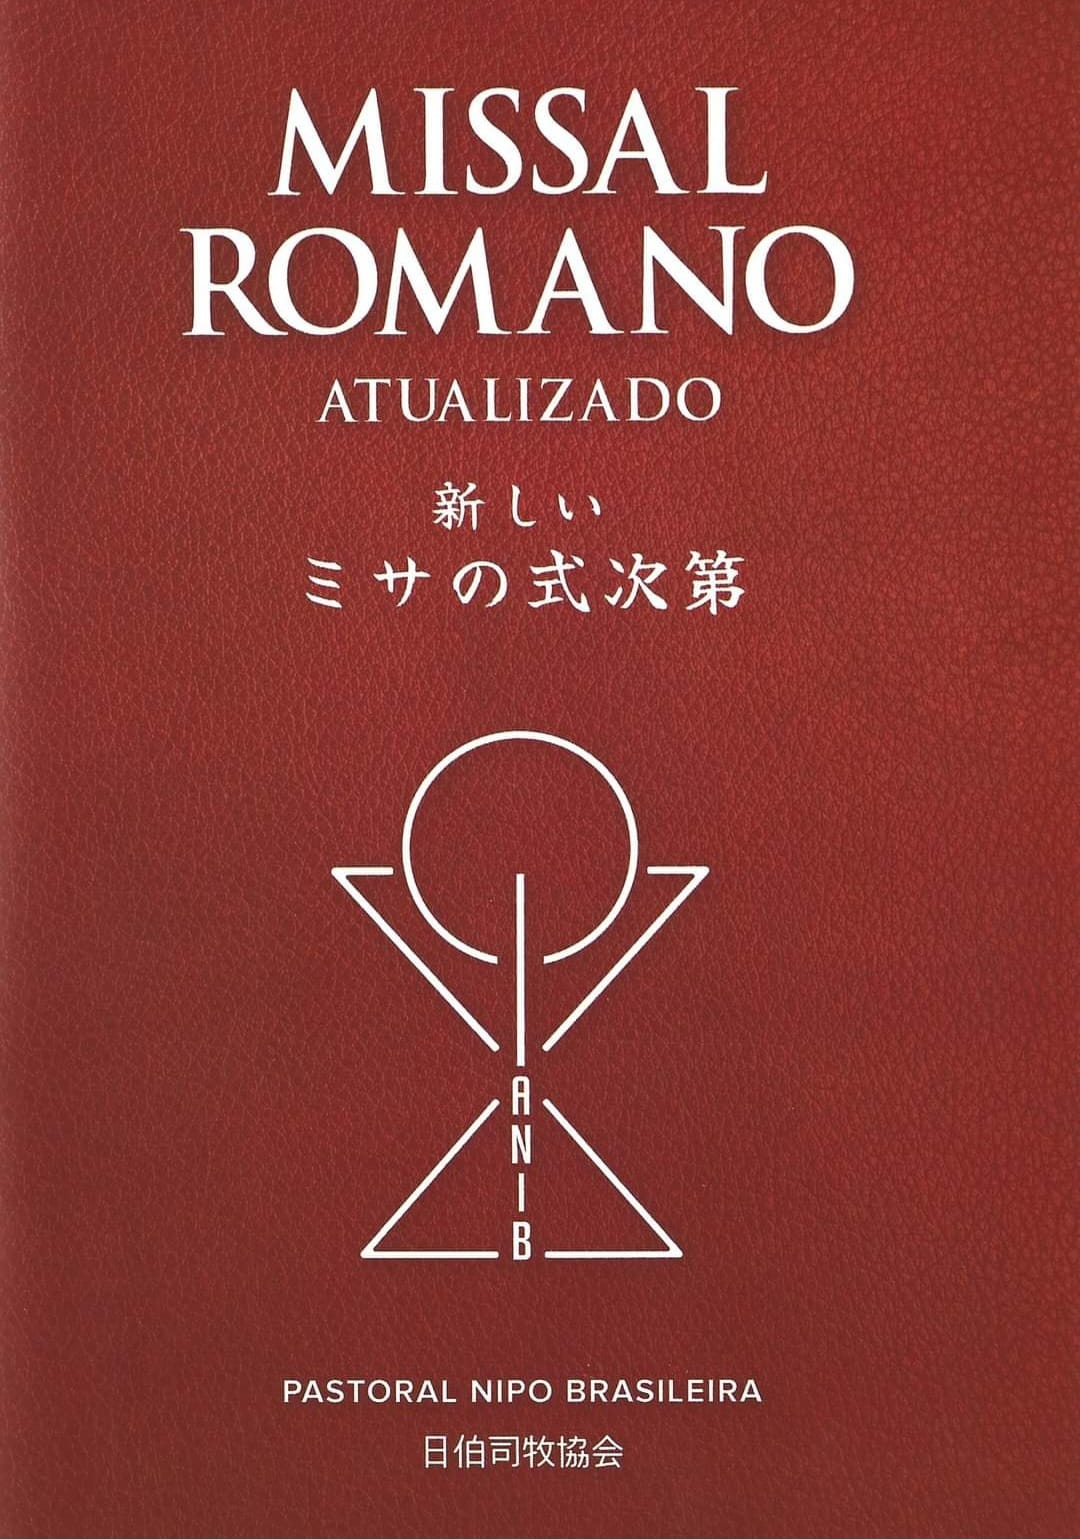 Missal Romano ATUALIZADO, em Nihongo, Japonês Romanizado e em Português.